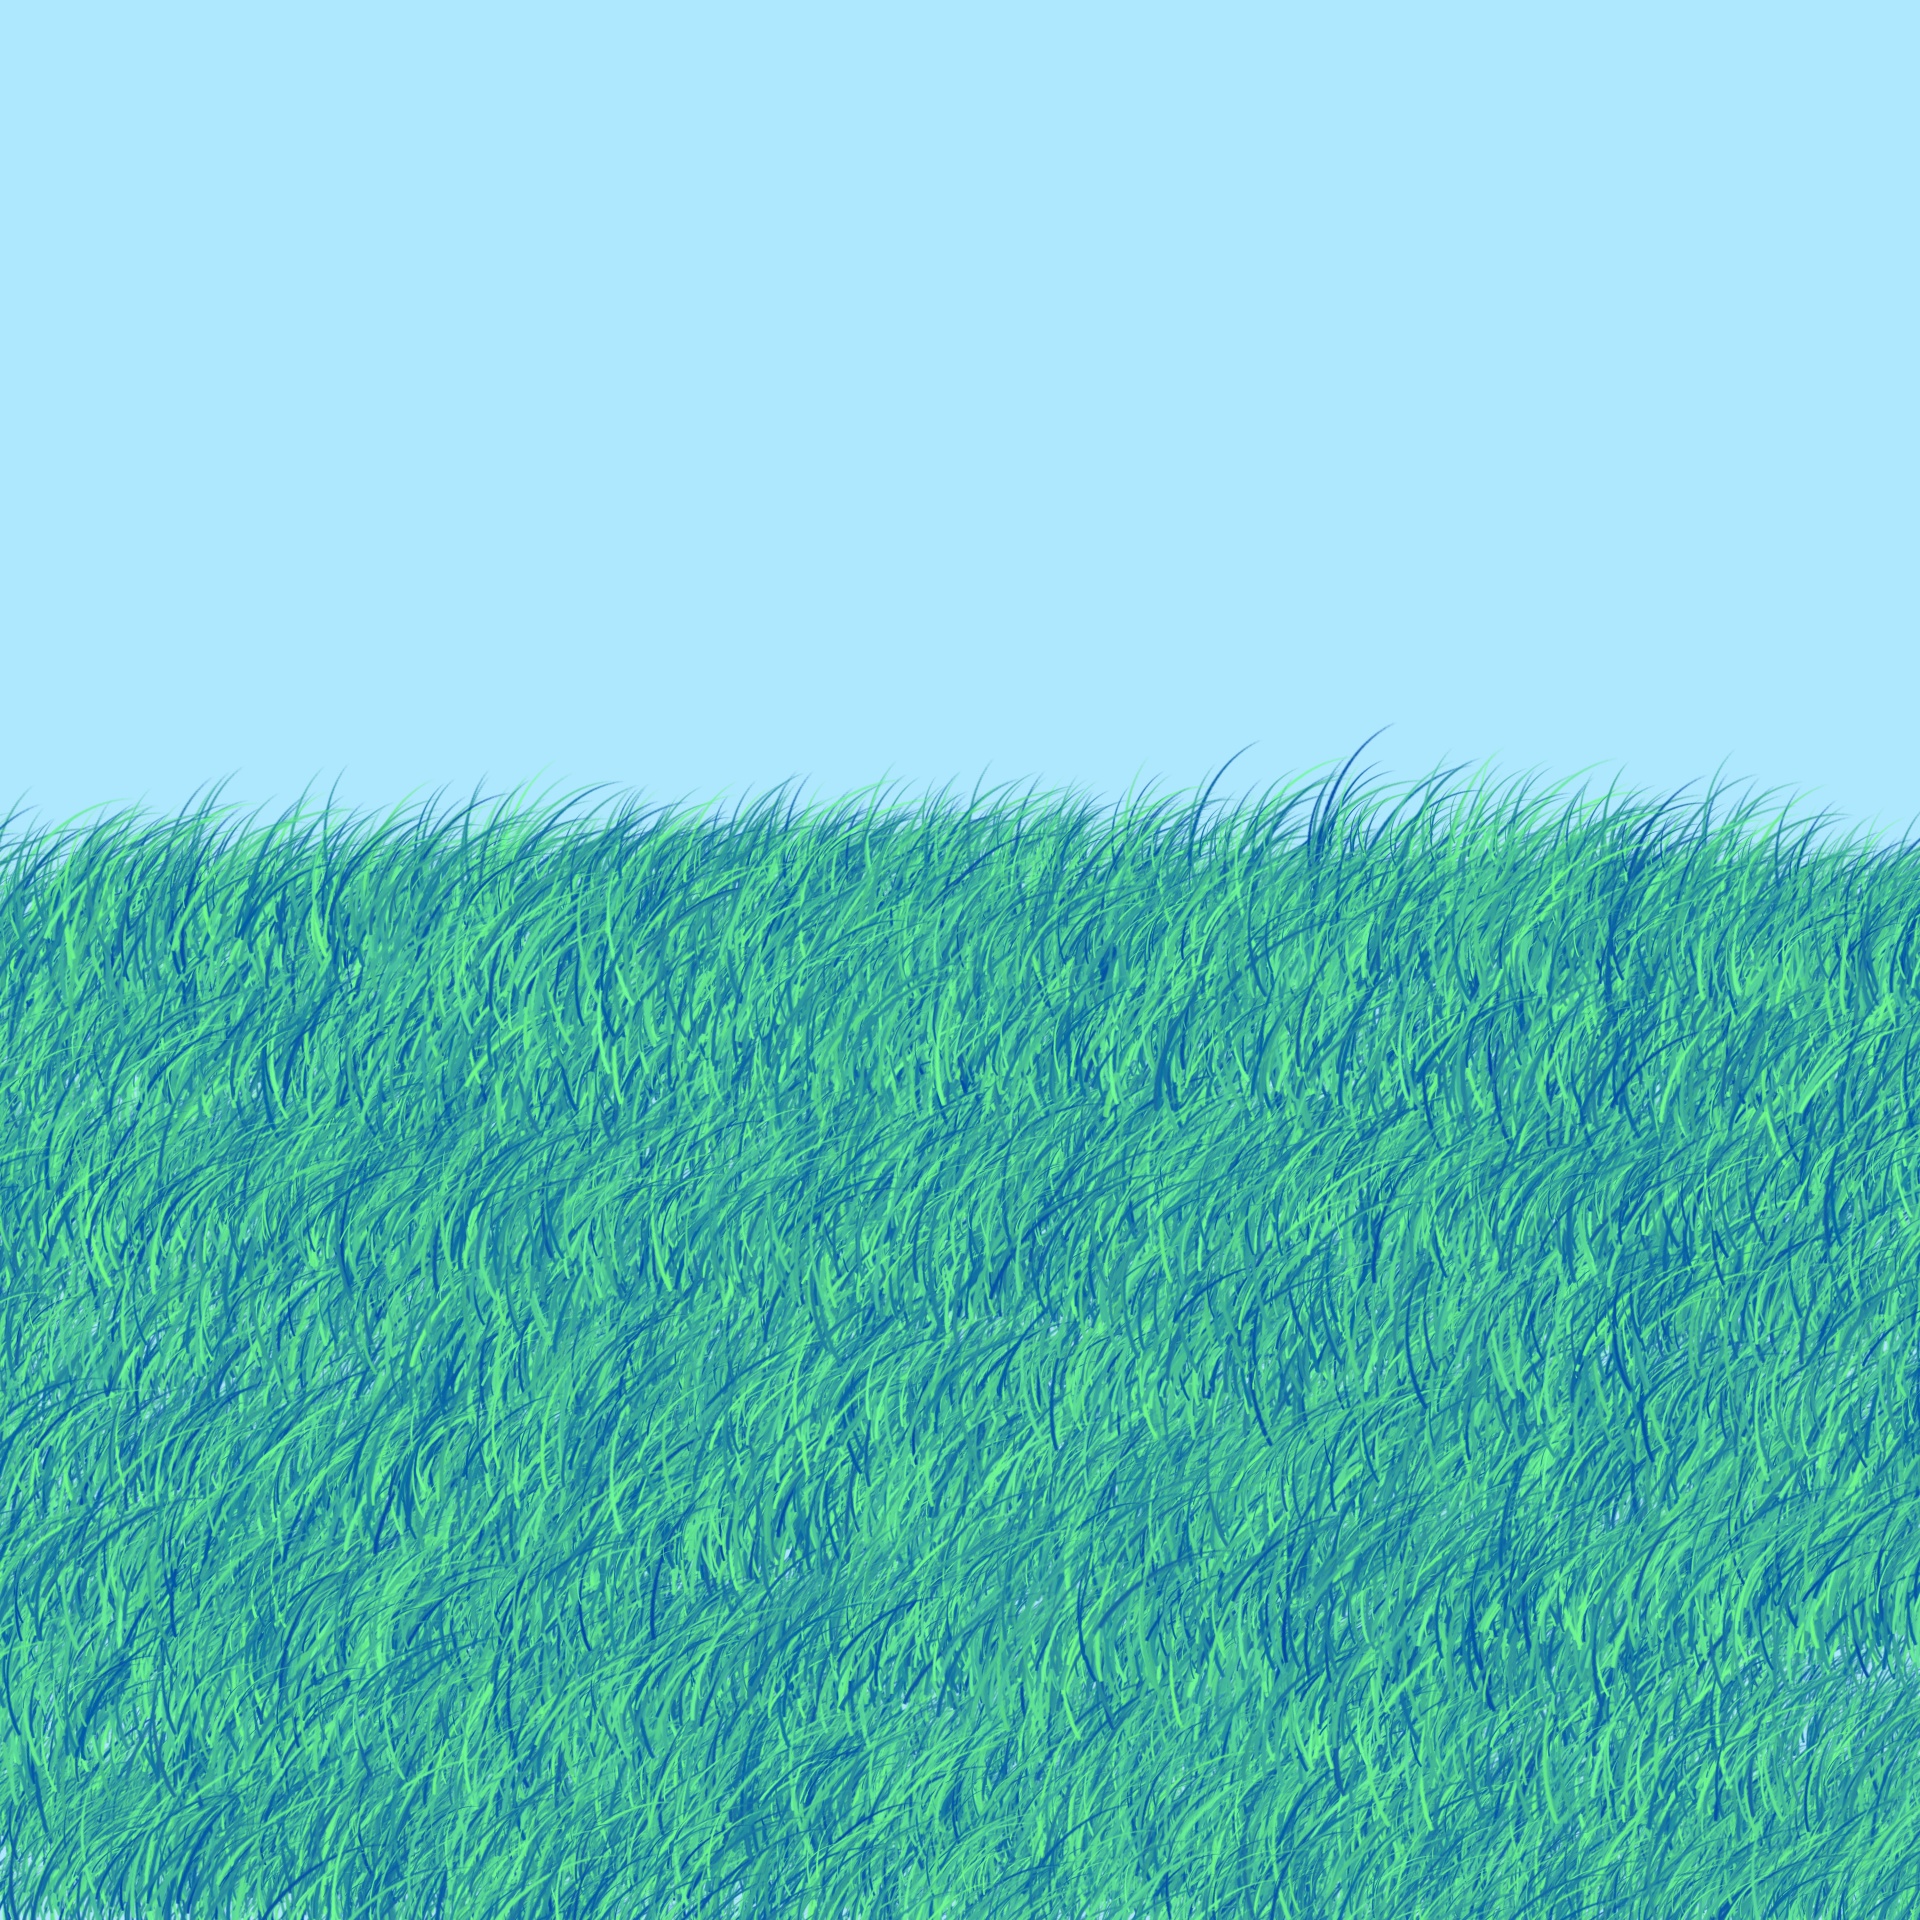 Grassy Area